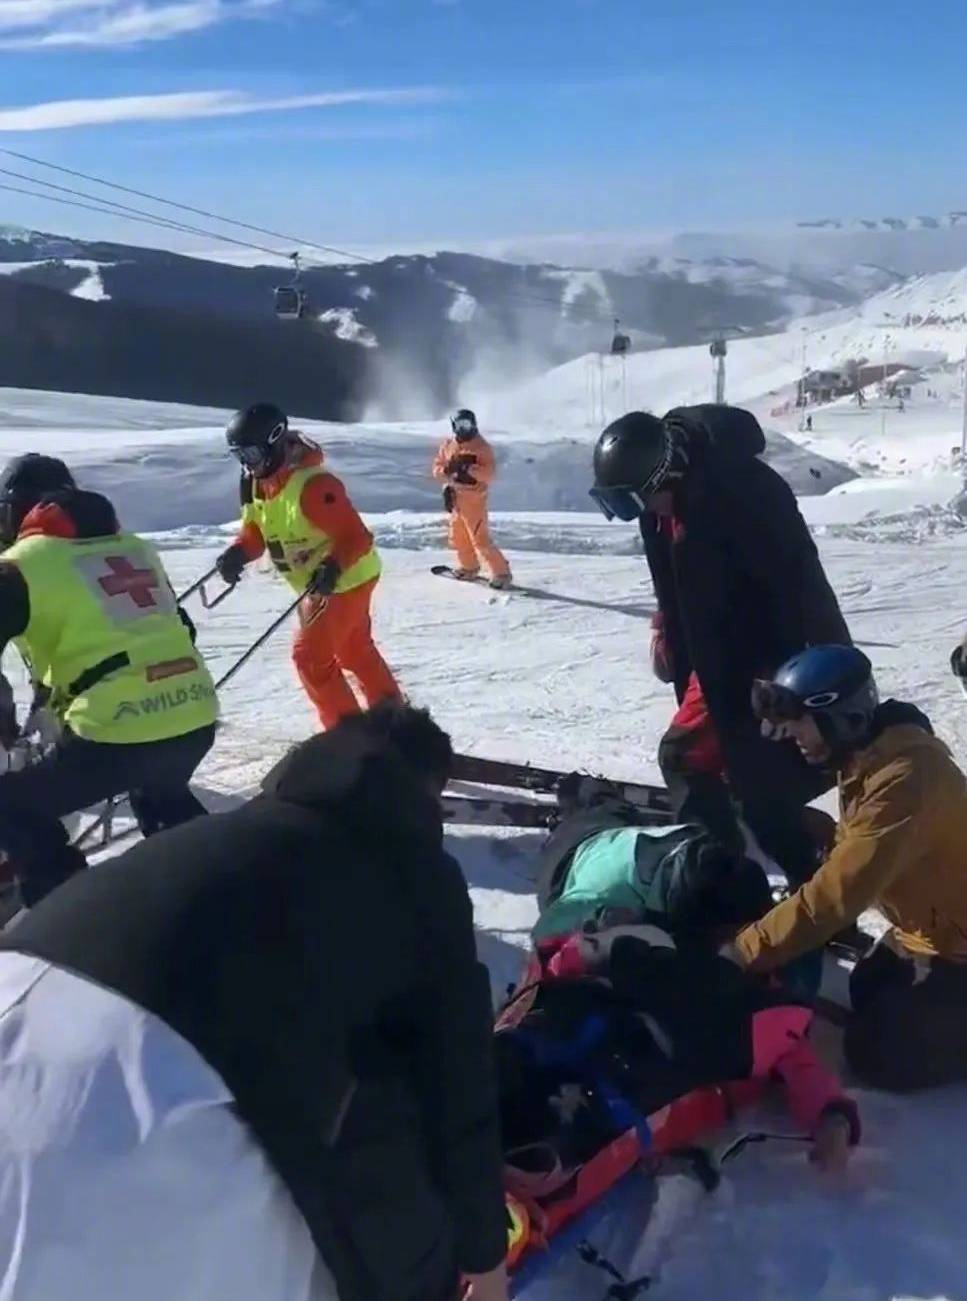 意外死者为国内知名女滑雪教练周雅萍。